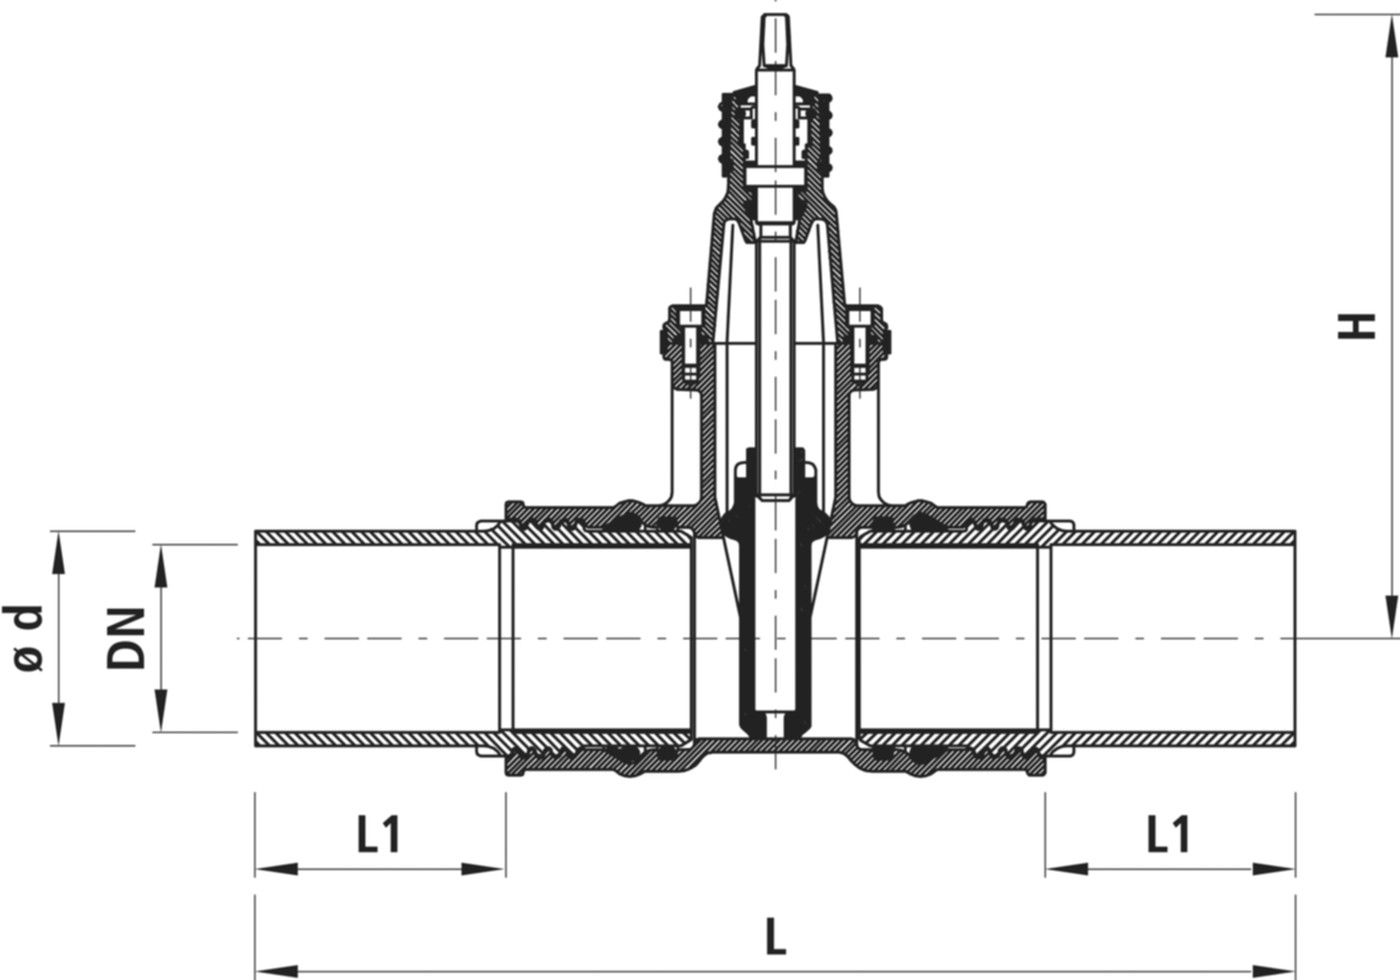 Einschweiss-Schieber für Gas 4815 DN 200 / d 200mm - Hawle Armaturen